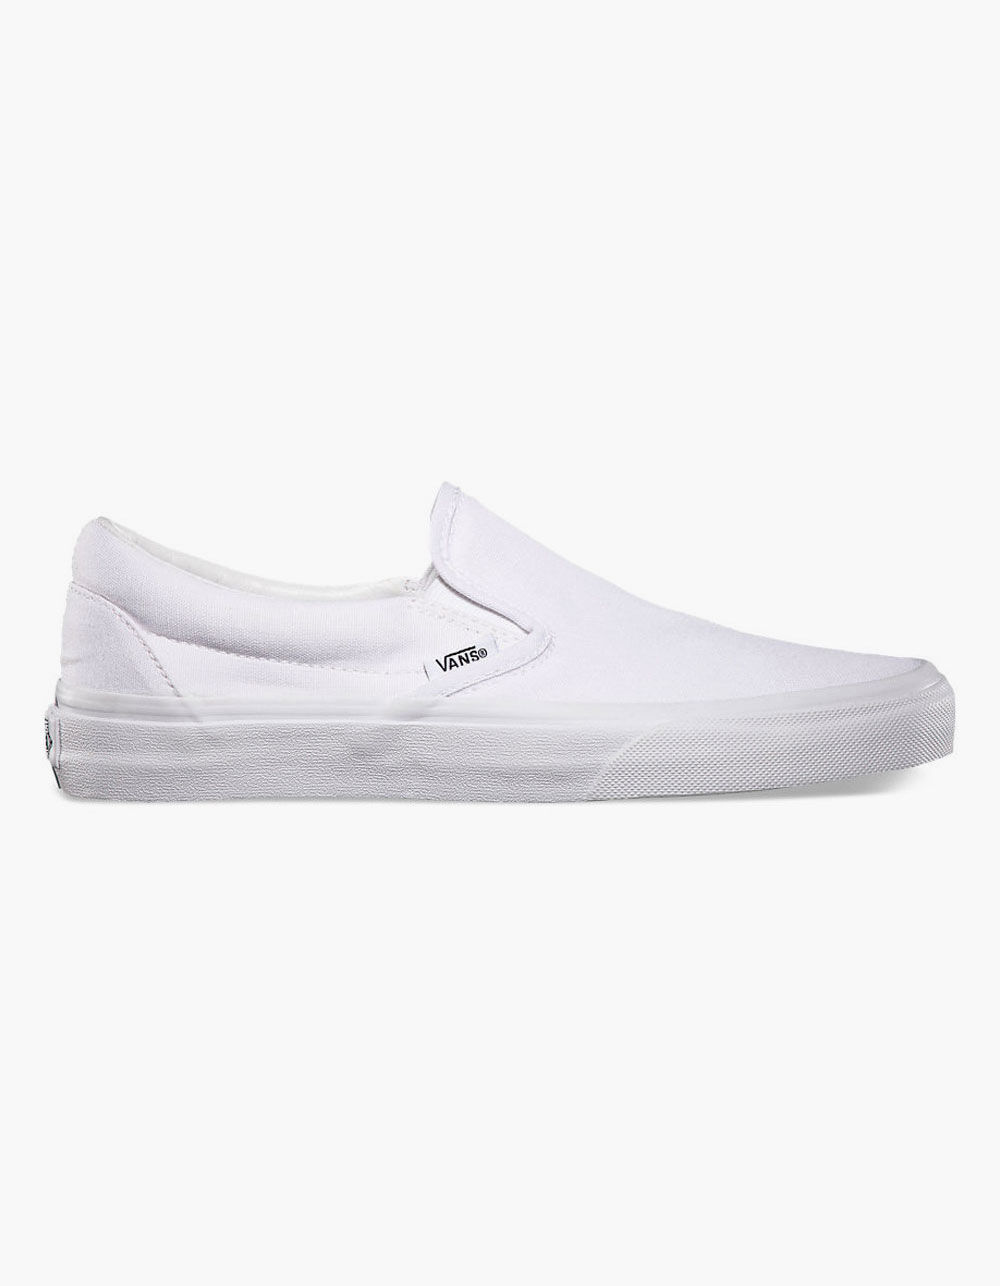 Vans Men's Slip-On Shoes, Size: 13.0, White